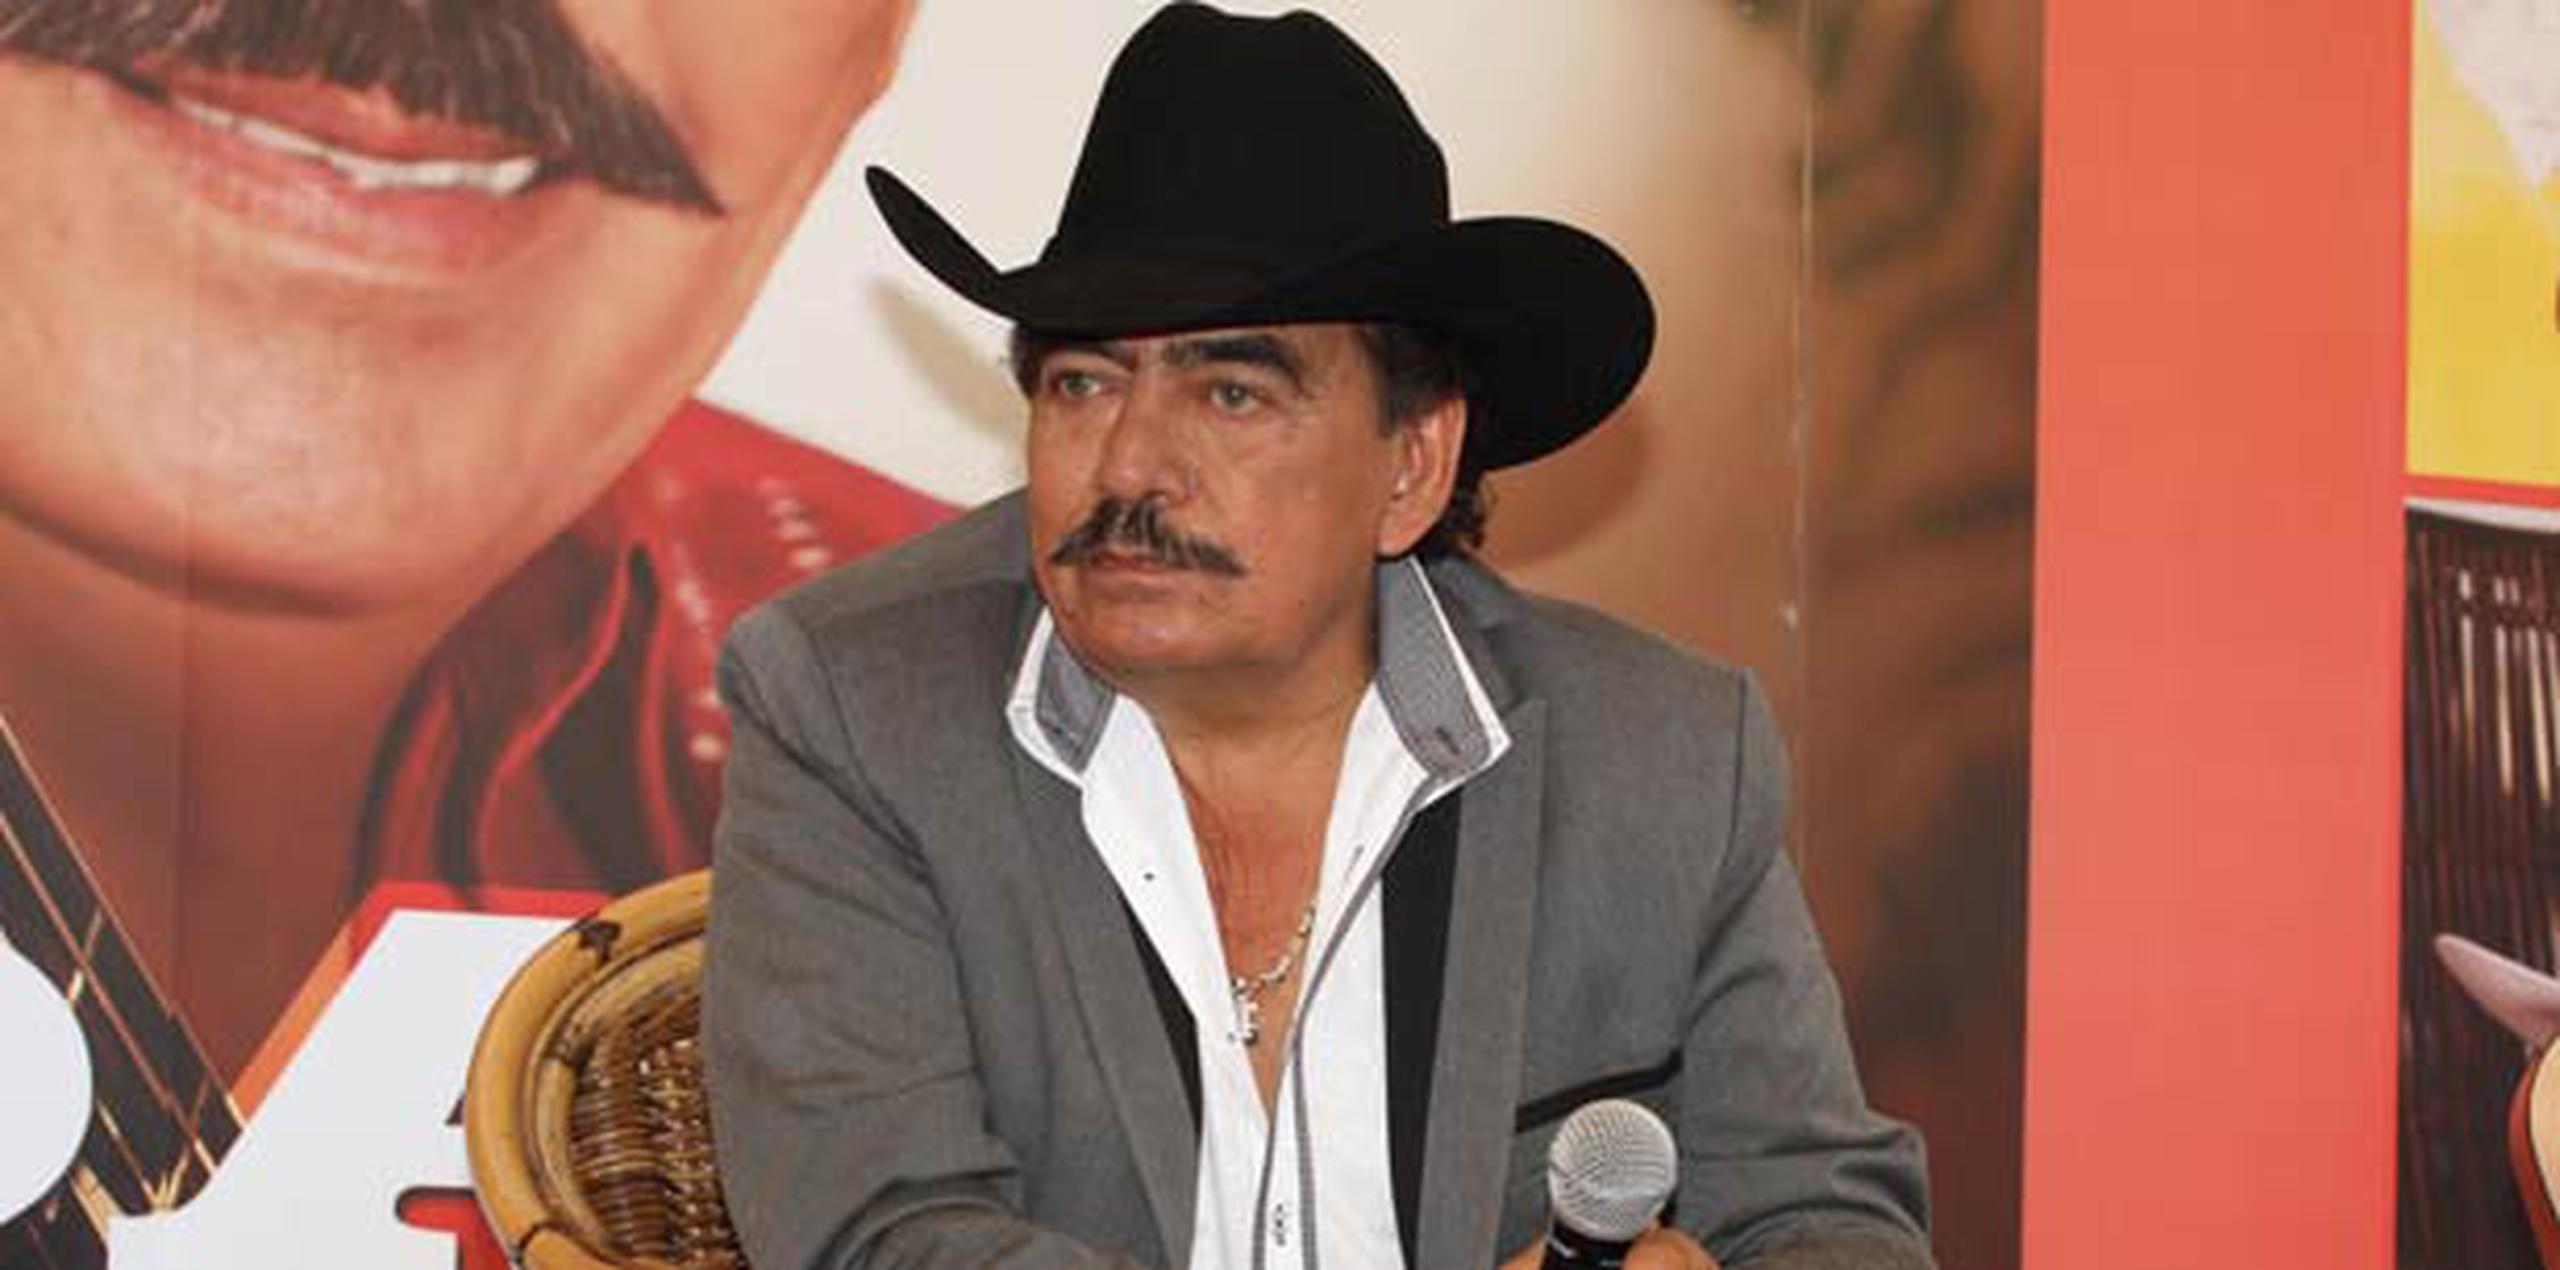 José Manuel Figueroa (su verdadero nombre) nació el 8 de abril de 1951. (Suministrada / GDA / El Universal)